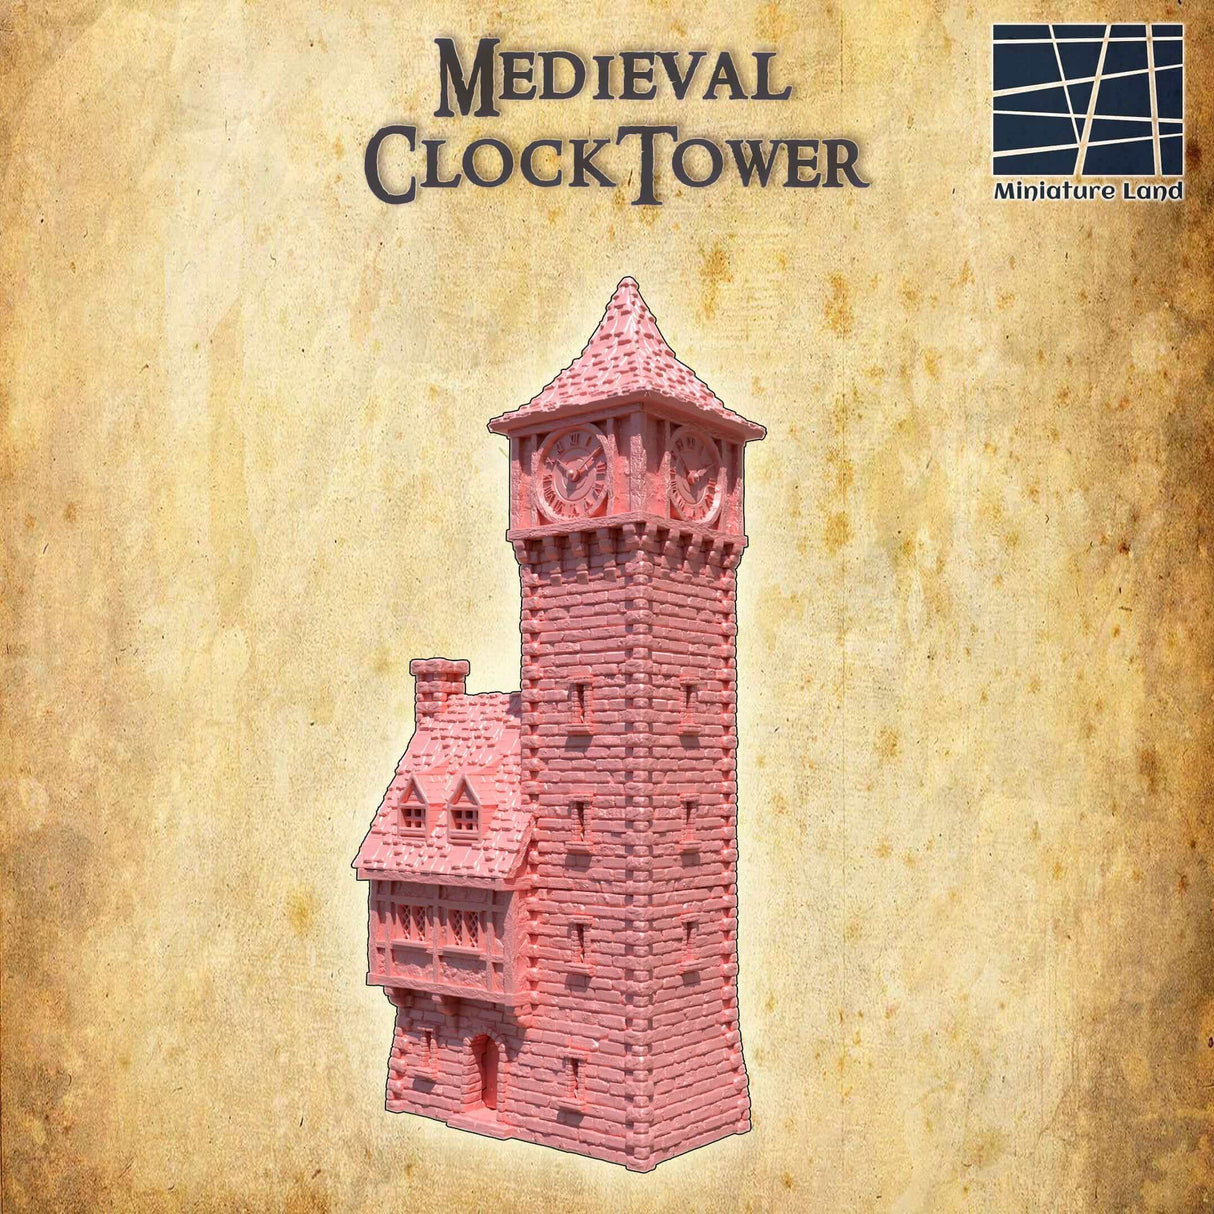 Miniature Land Medieval Clock Tower - Detailreiche Tabletop-Gebäude-Kreation